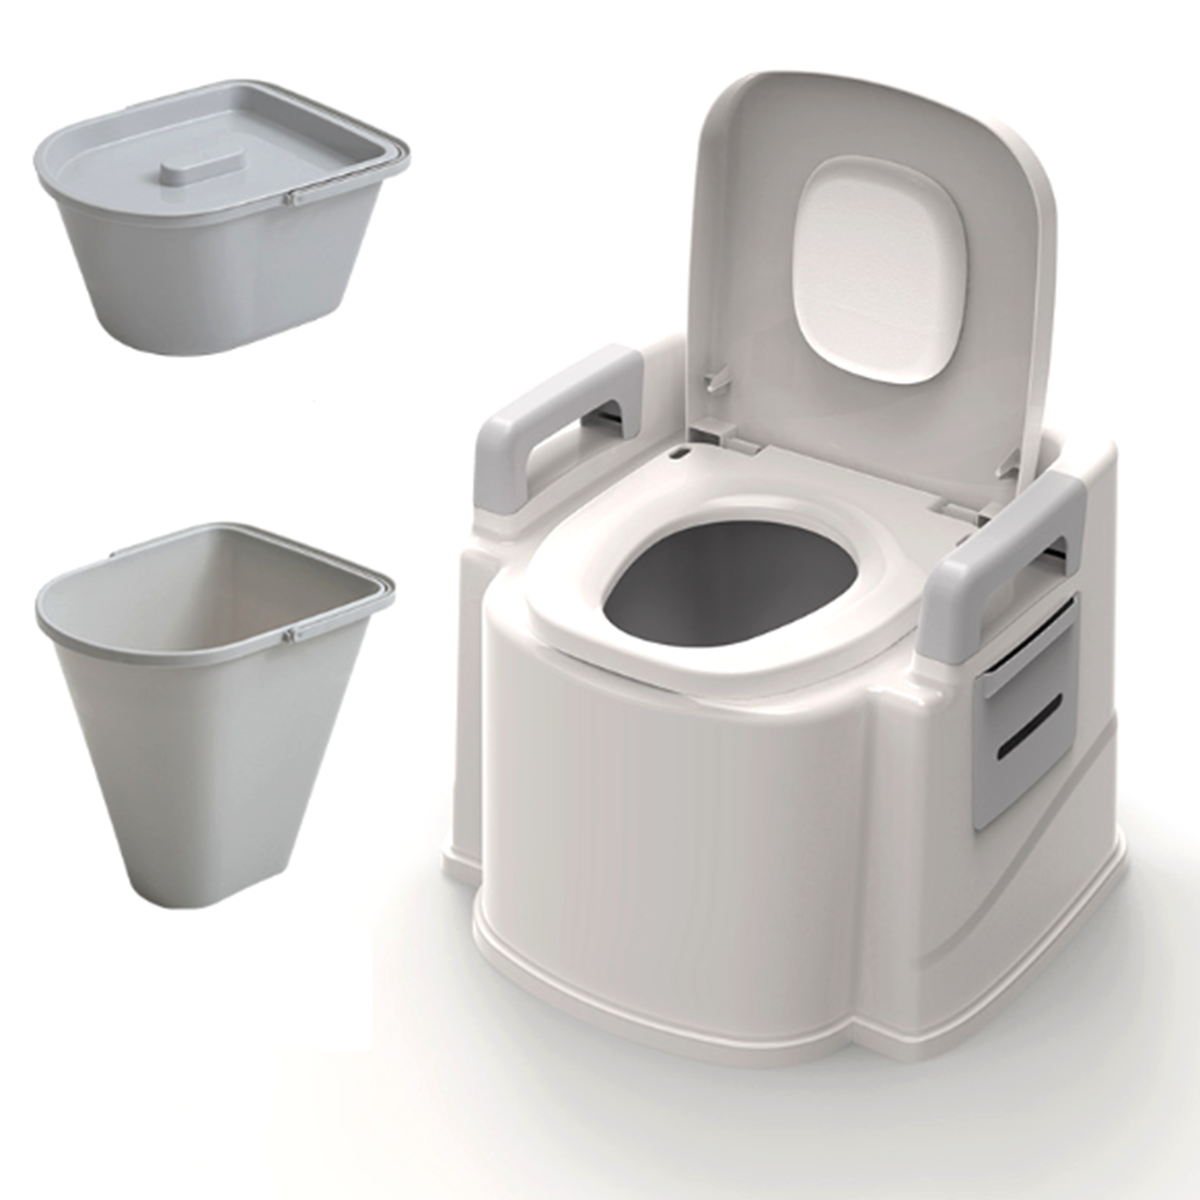 Draagbaar Reistoilet Compact Potje Emmerstoelen Afvaltank Lichtgewicht Outdoor Indoor Toilet voor Ca